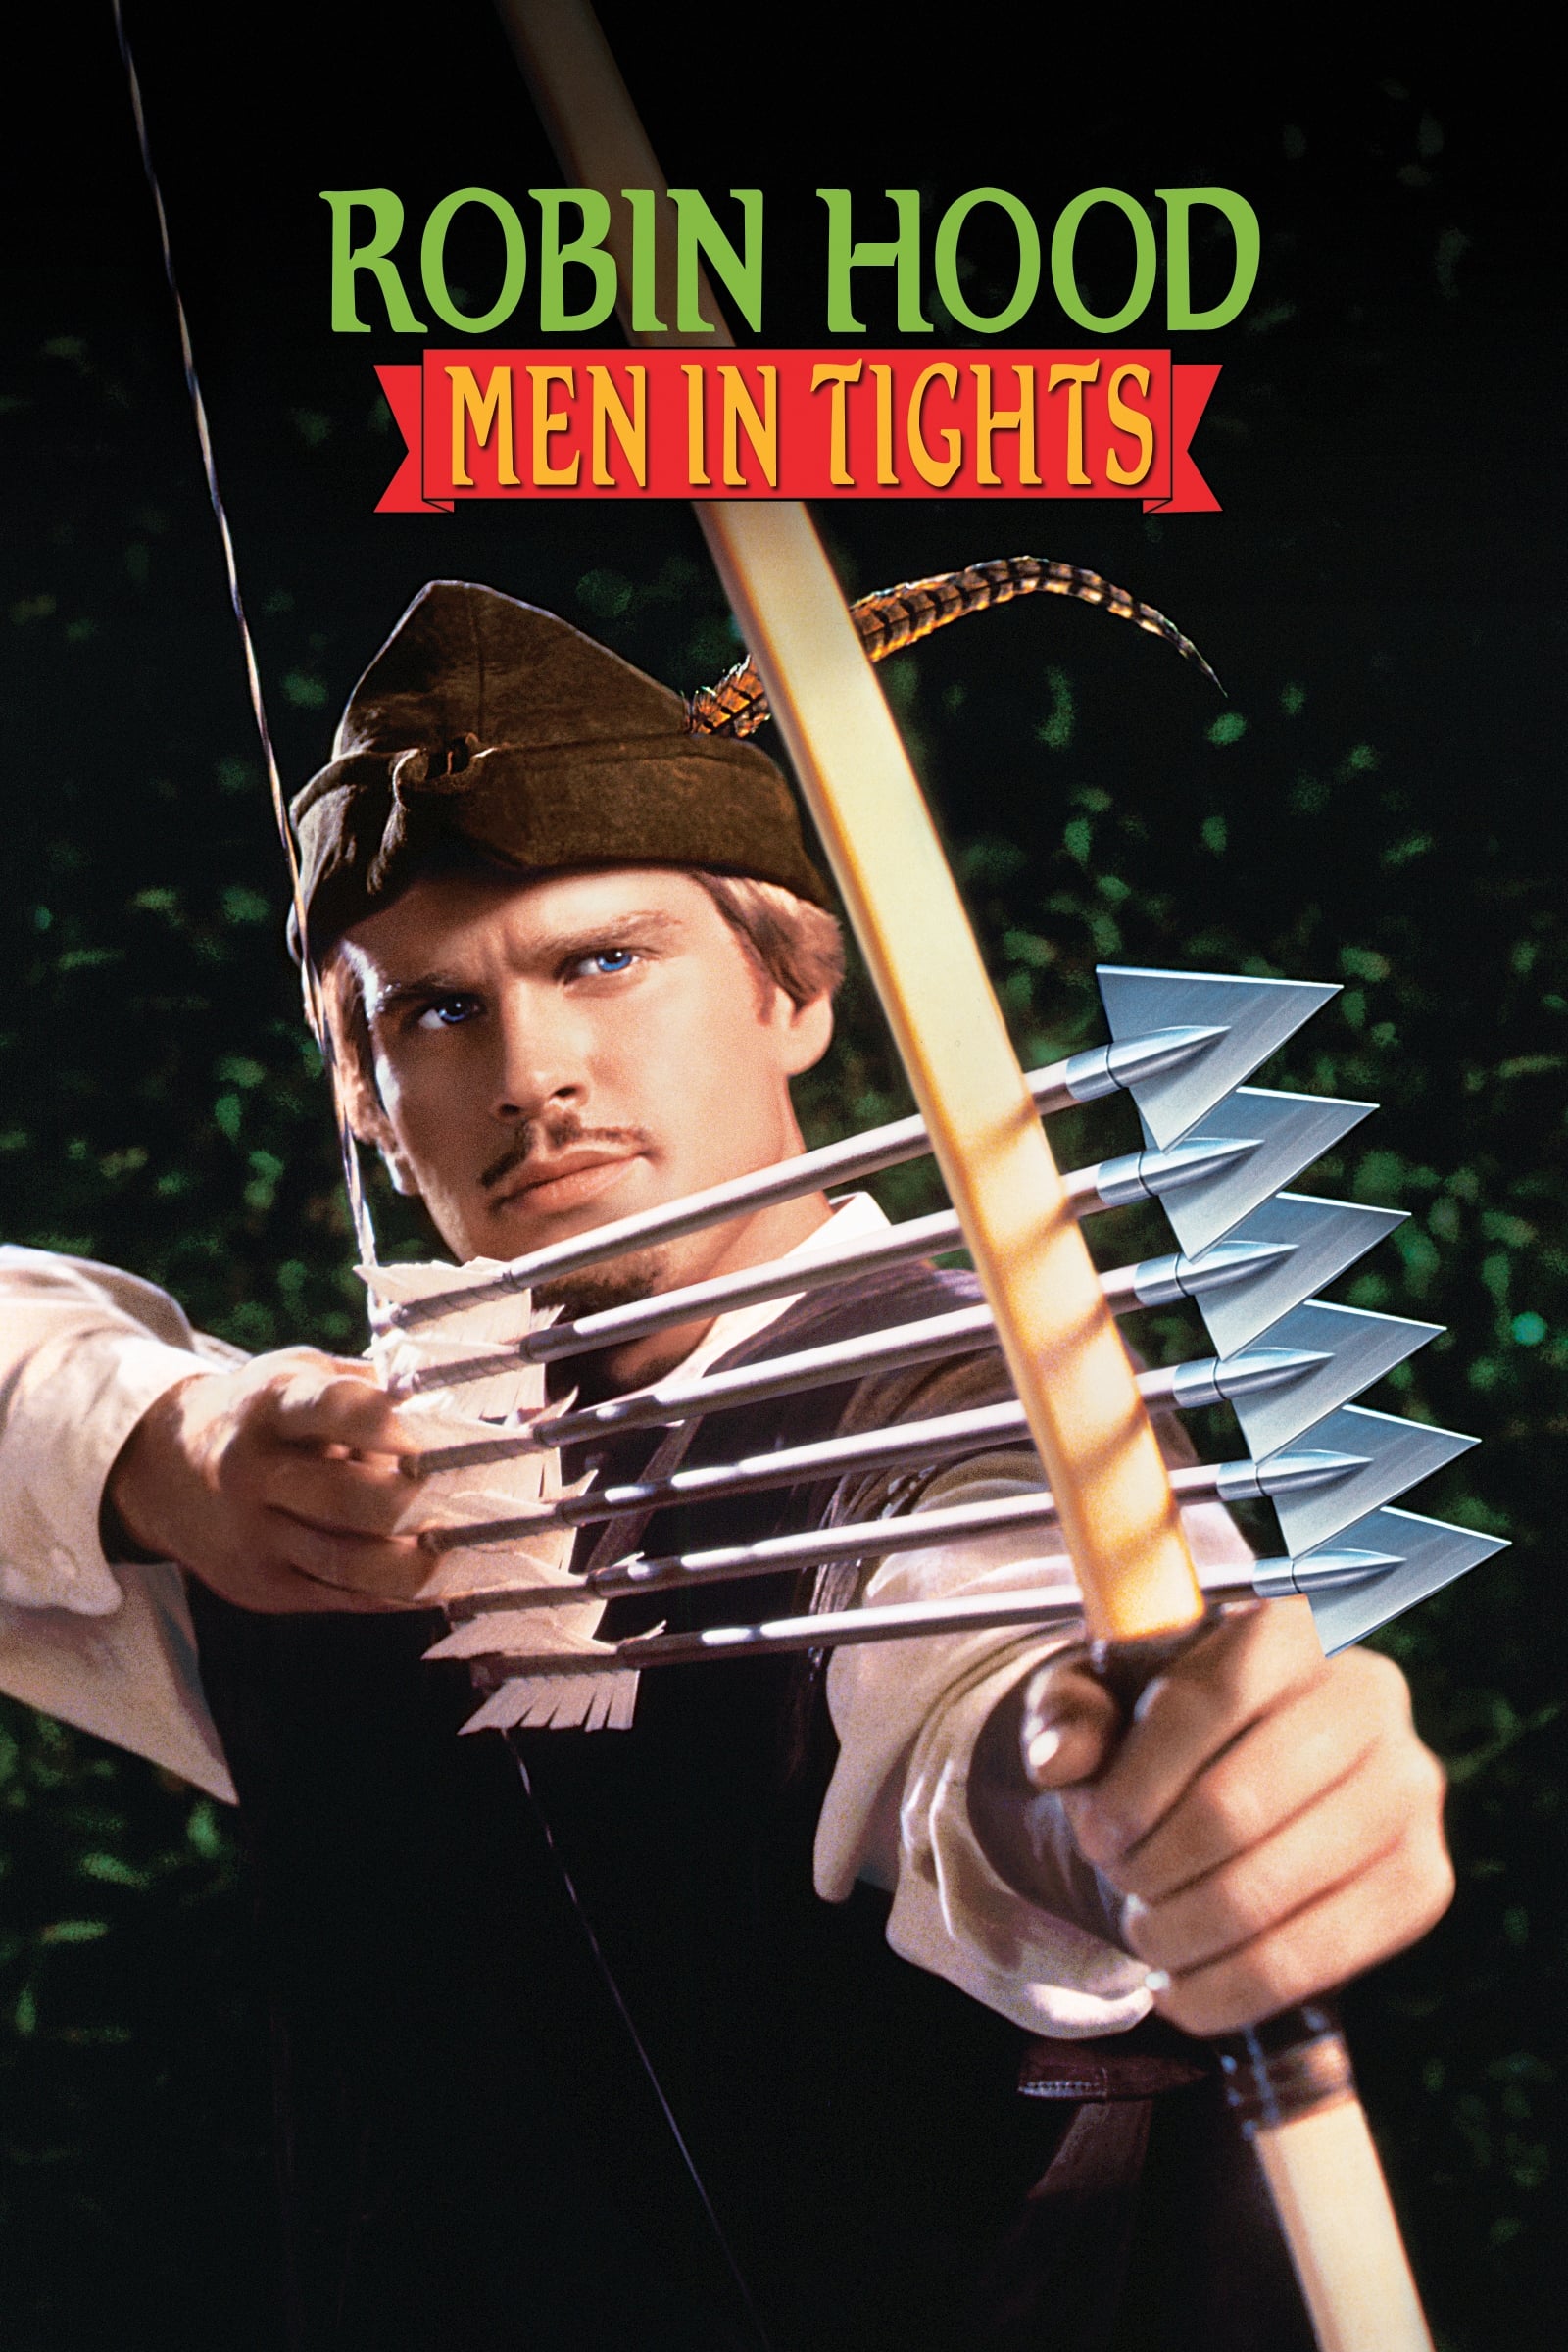 Las locas, locas aventuras de Robin Hood (1993)